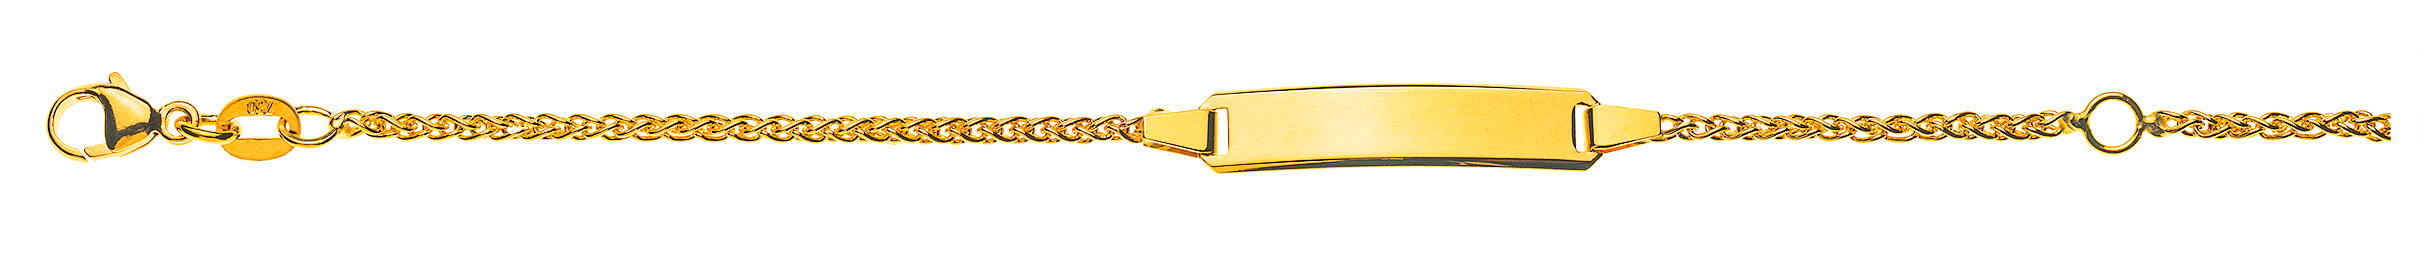 AURONOS Style ID bracelet 9k yellow gold plait chain 16cm